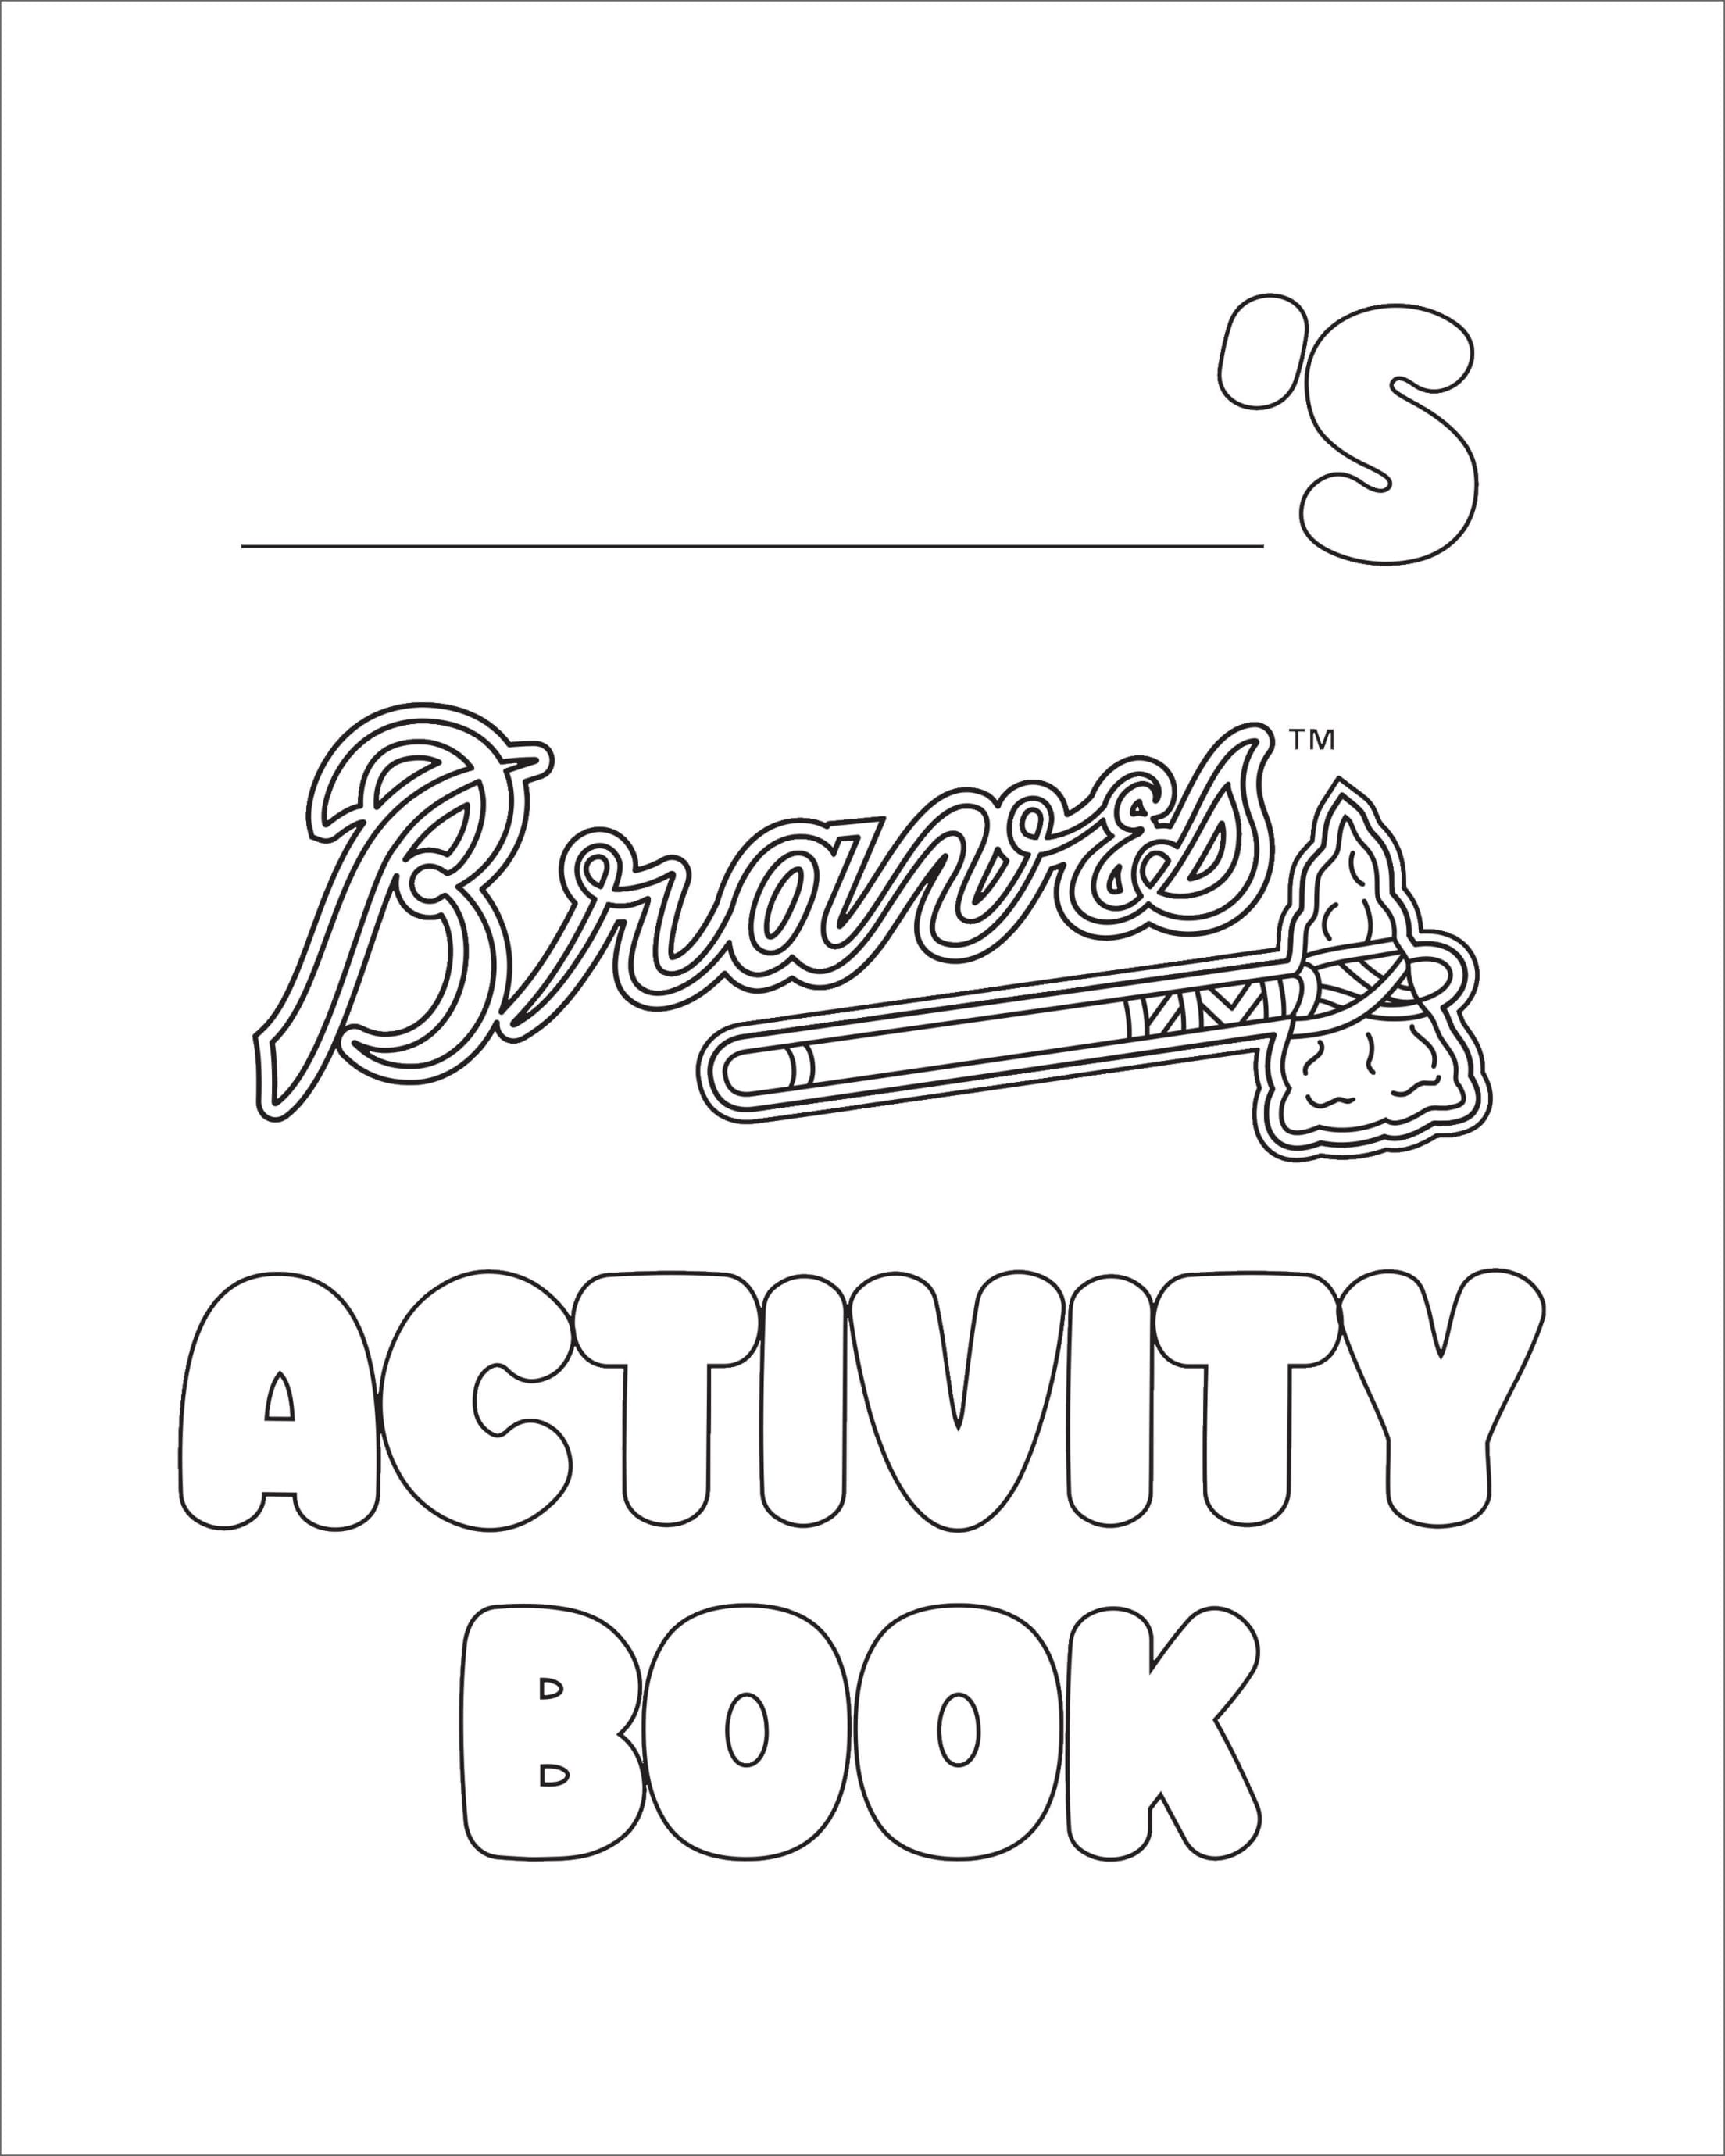 Blooper's Activities | Atlanta Braves